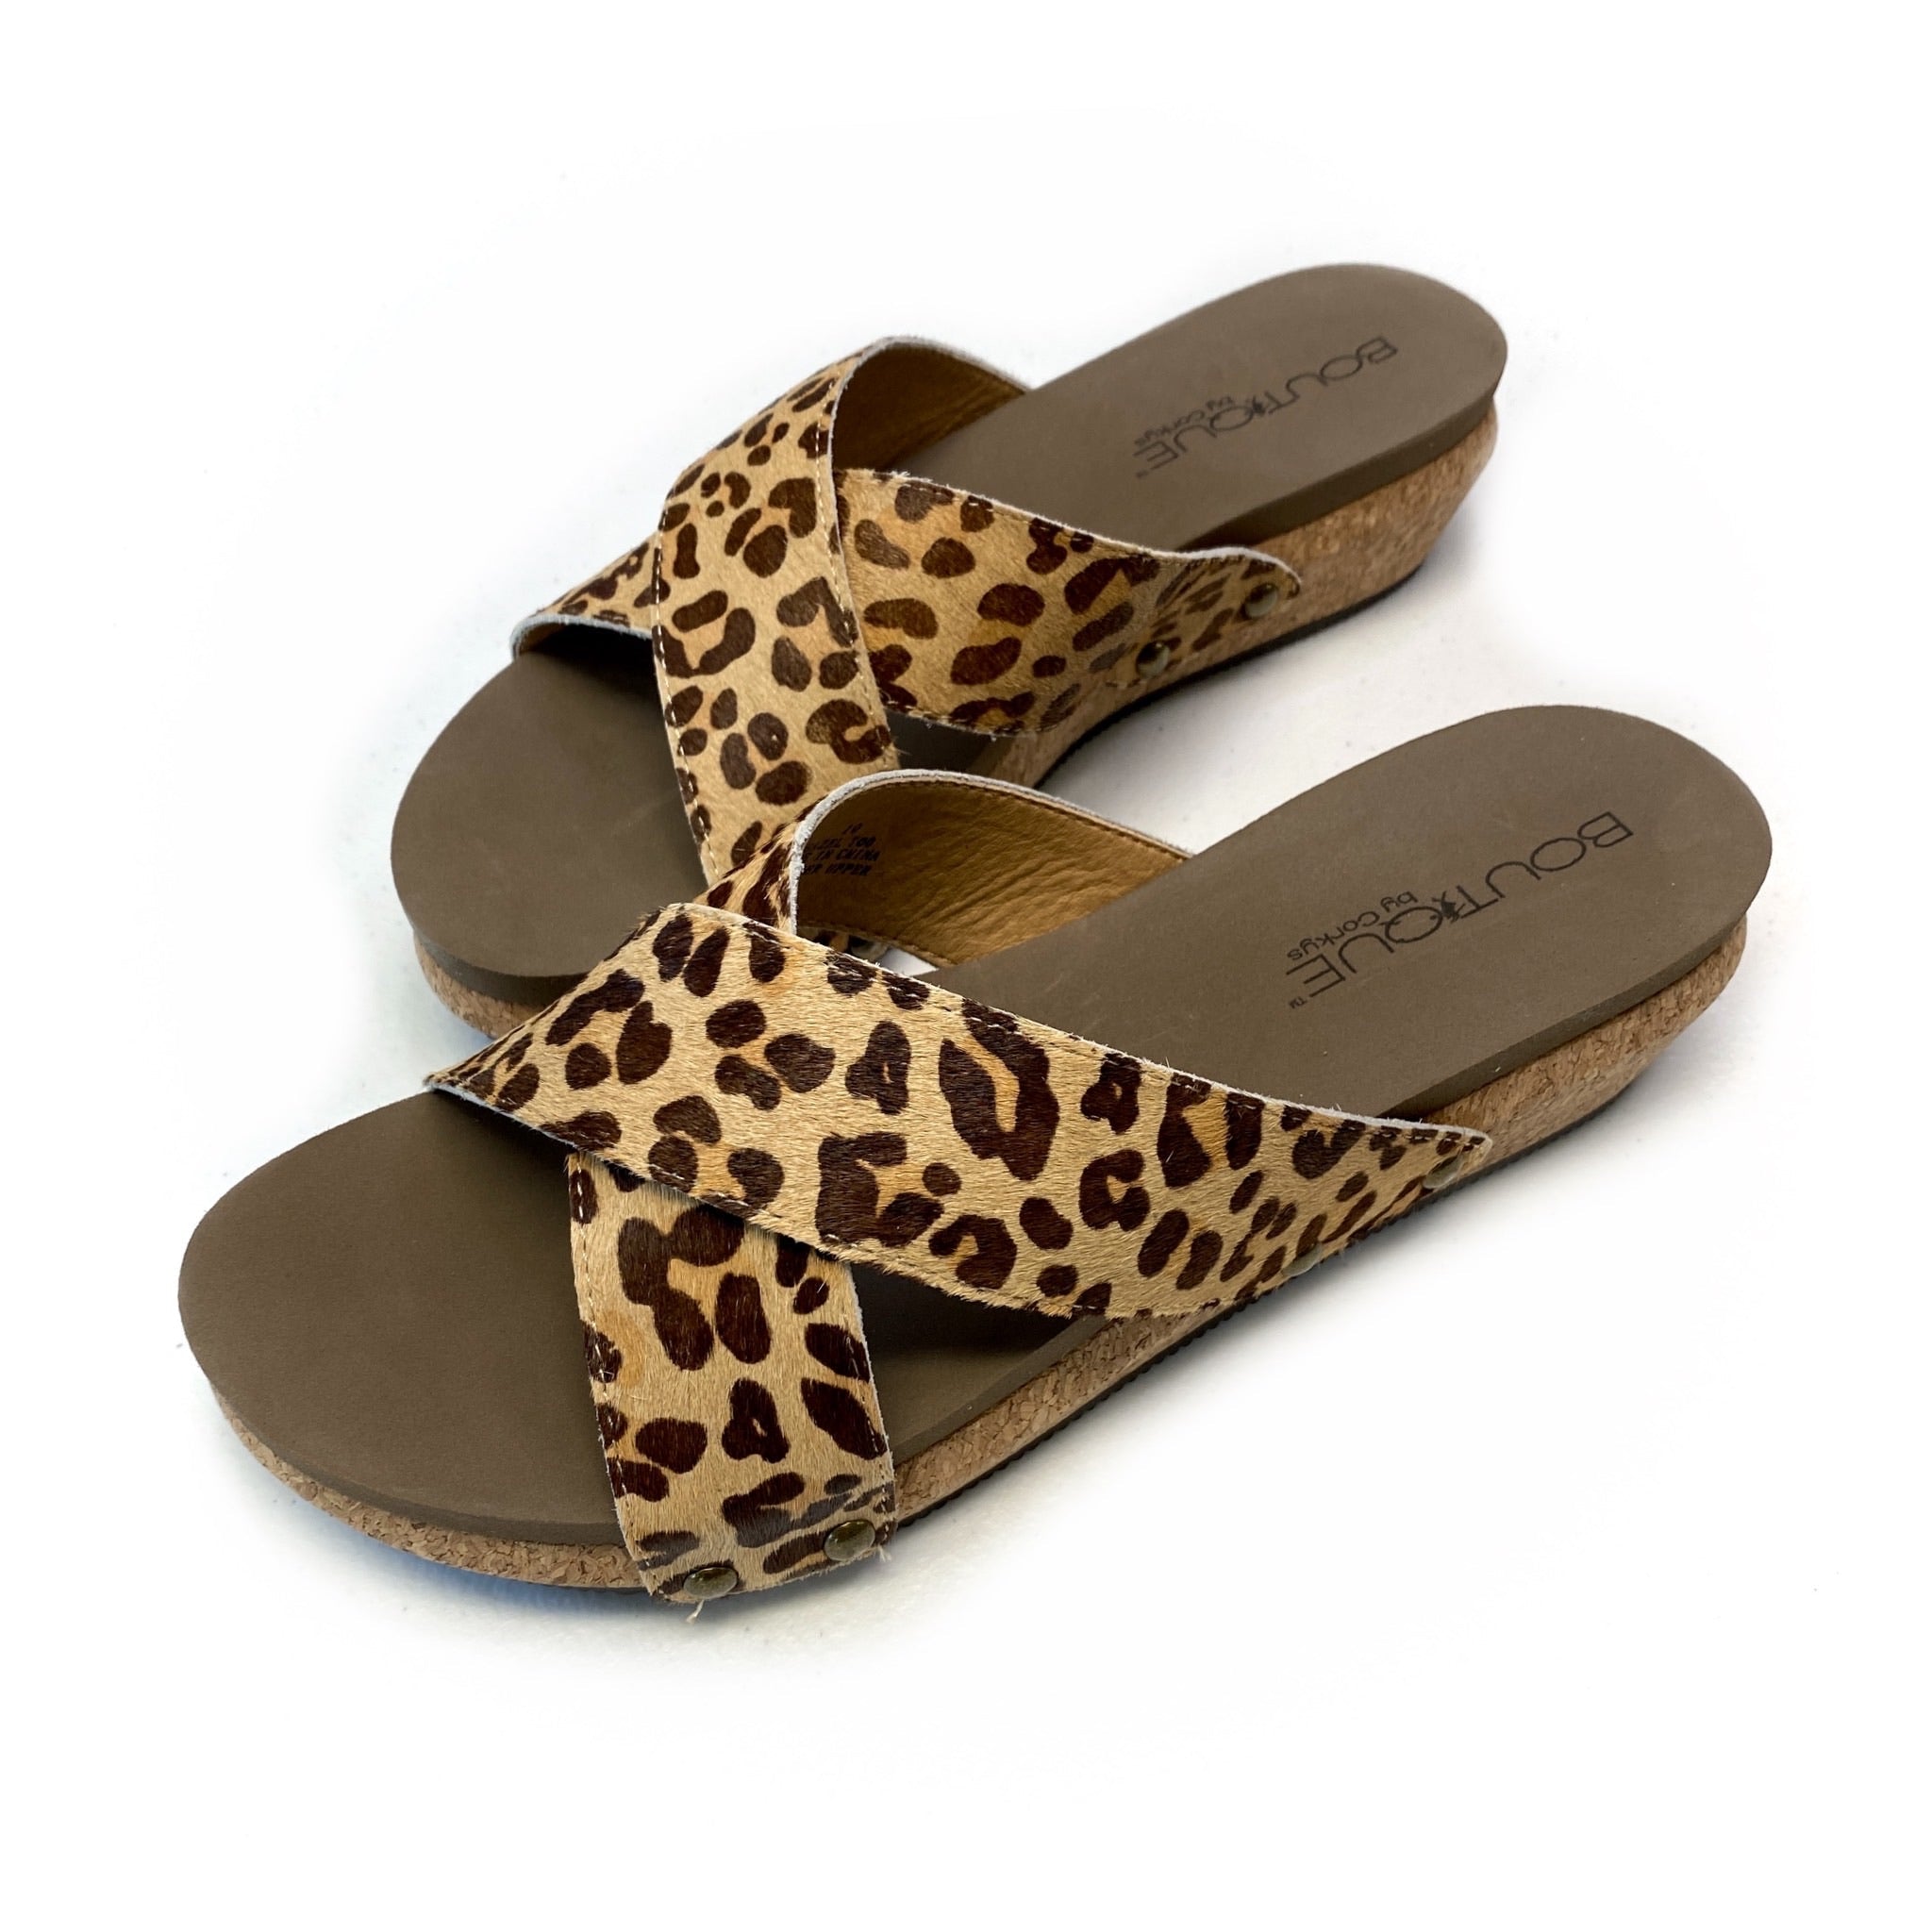 Hazel Too Sandals in Leopard